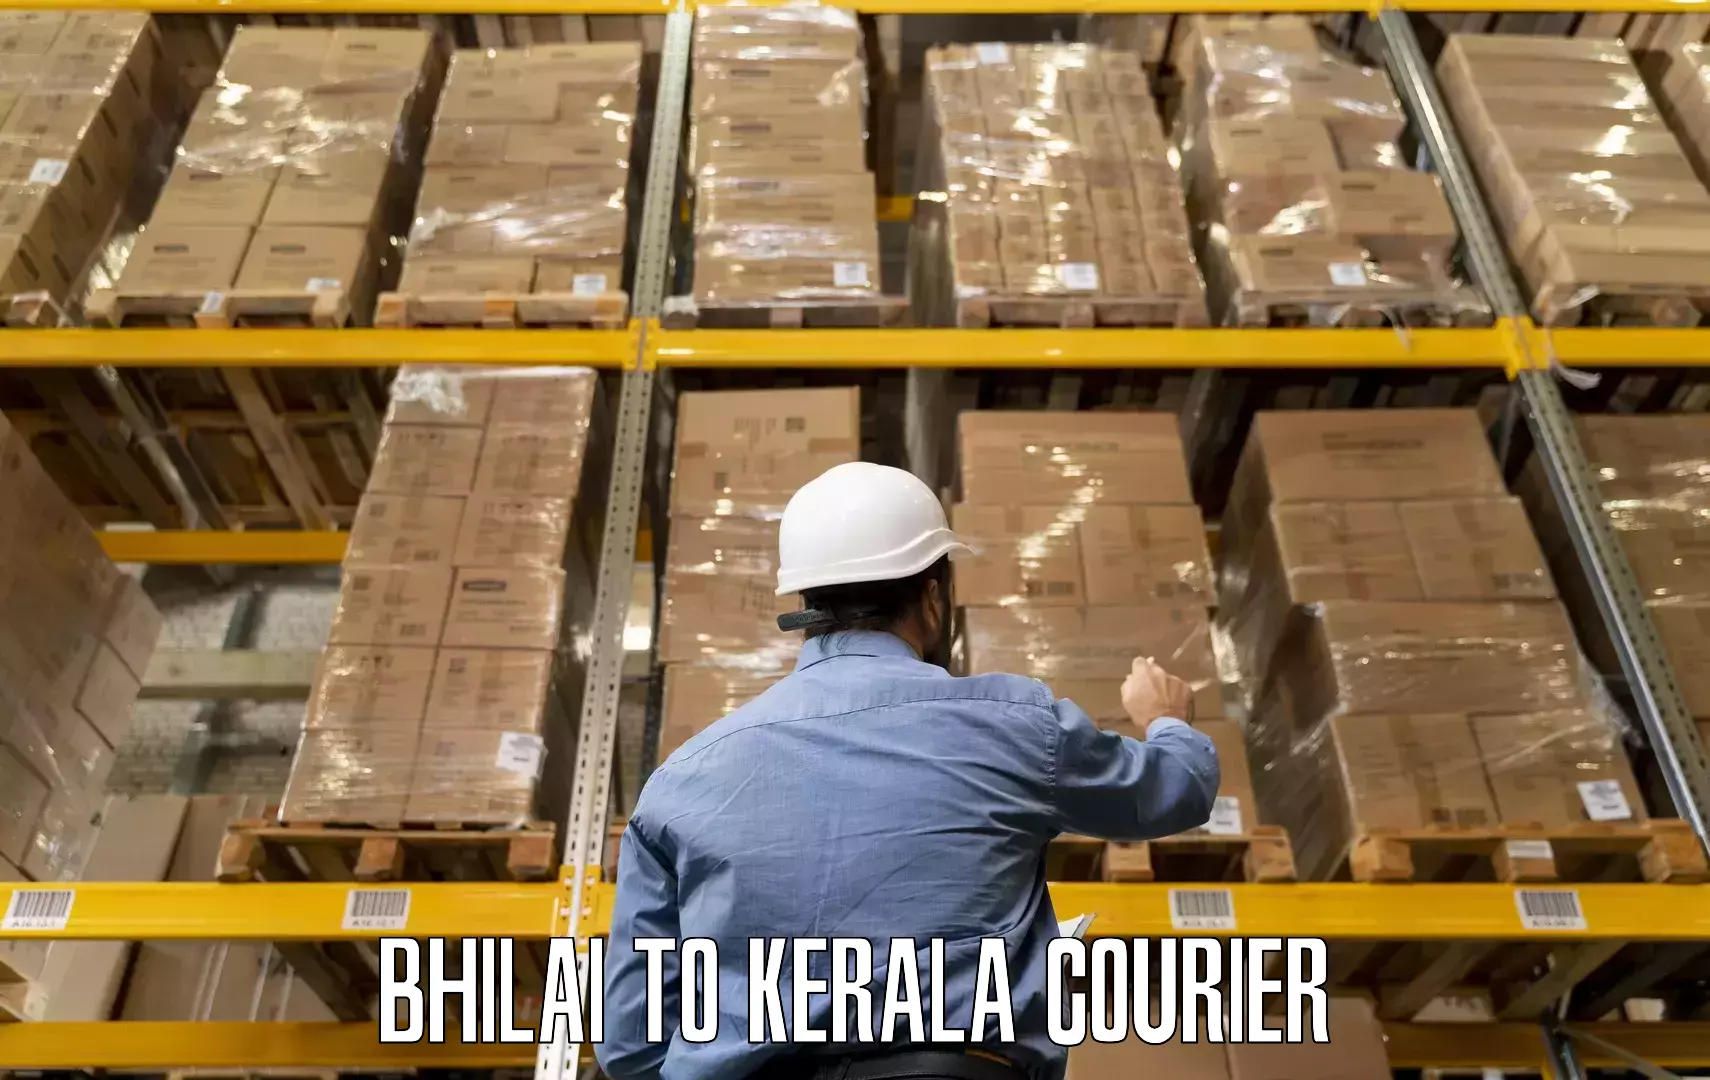 Home moving and storage Bhilai to Kerala